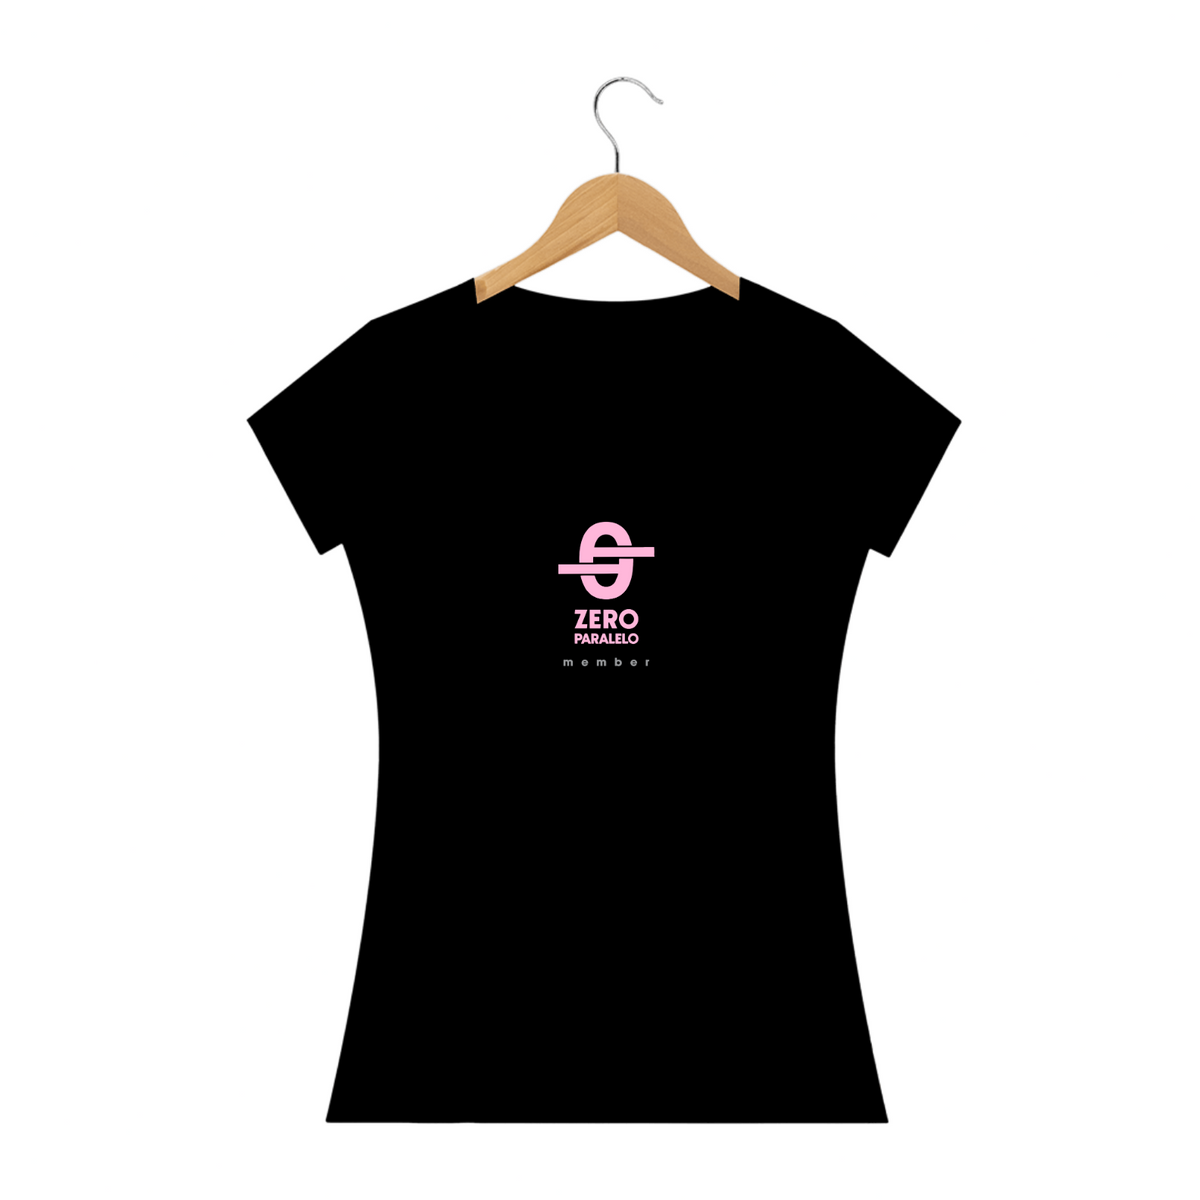 Nome do produto: Camiseta Fem. Zero Paralelo YT Member - 6 meses